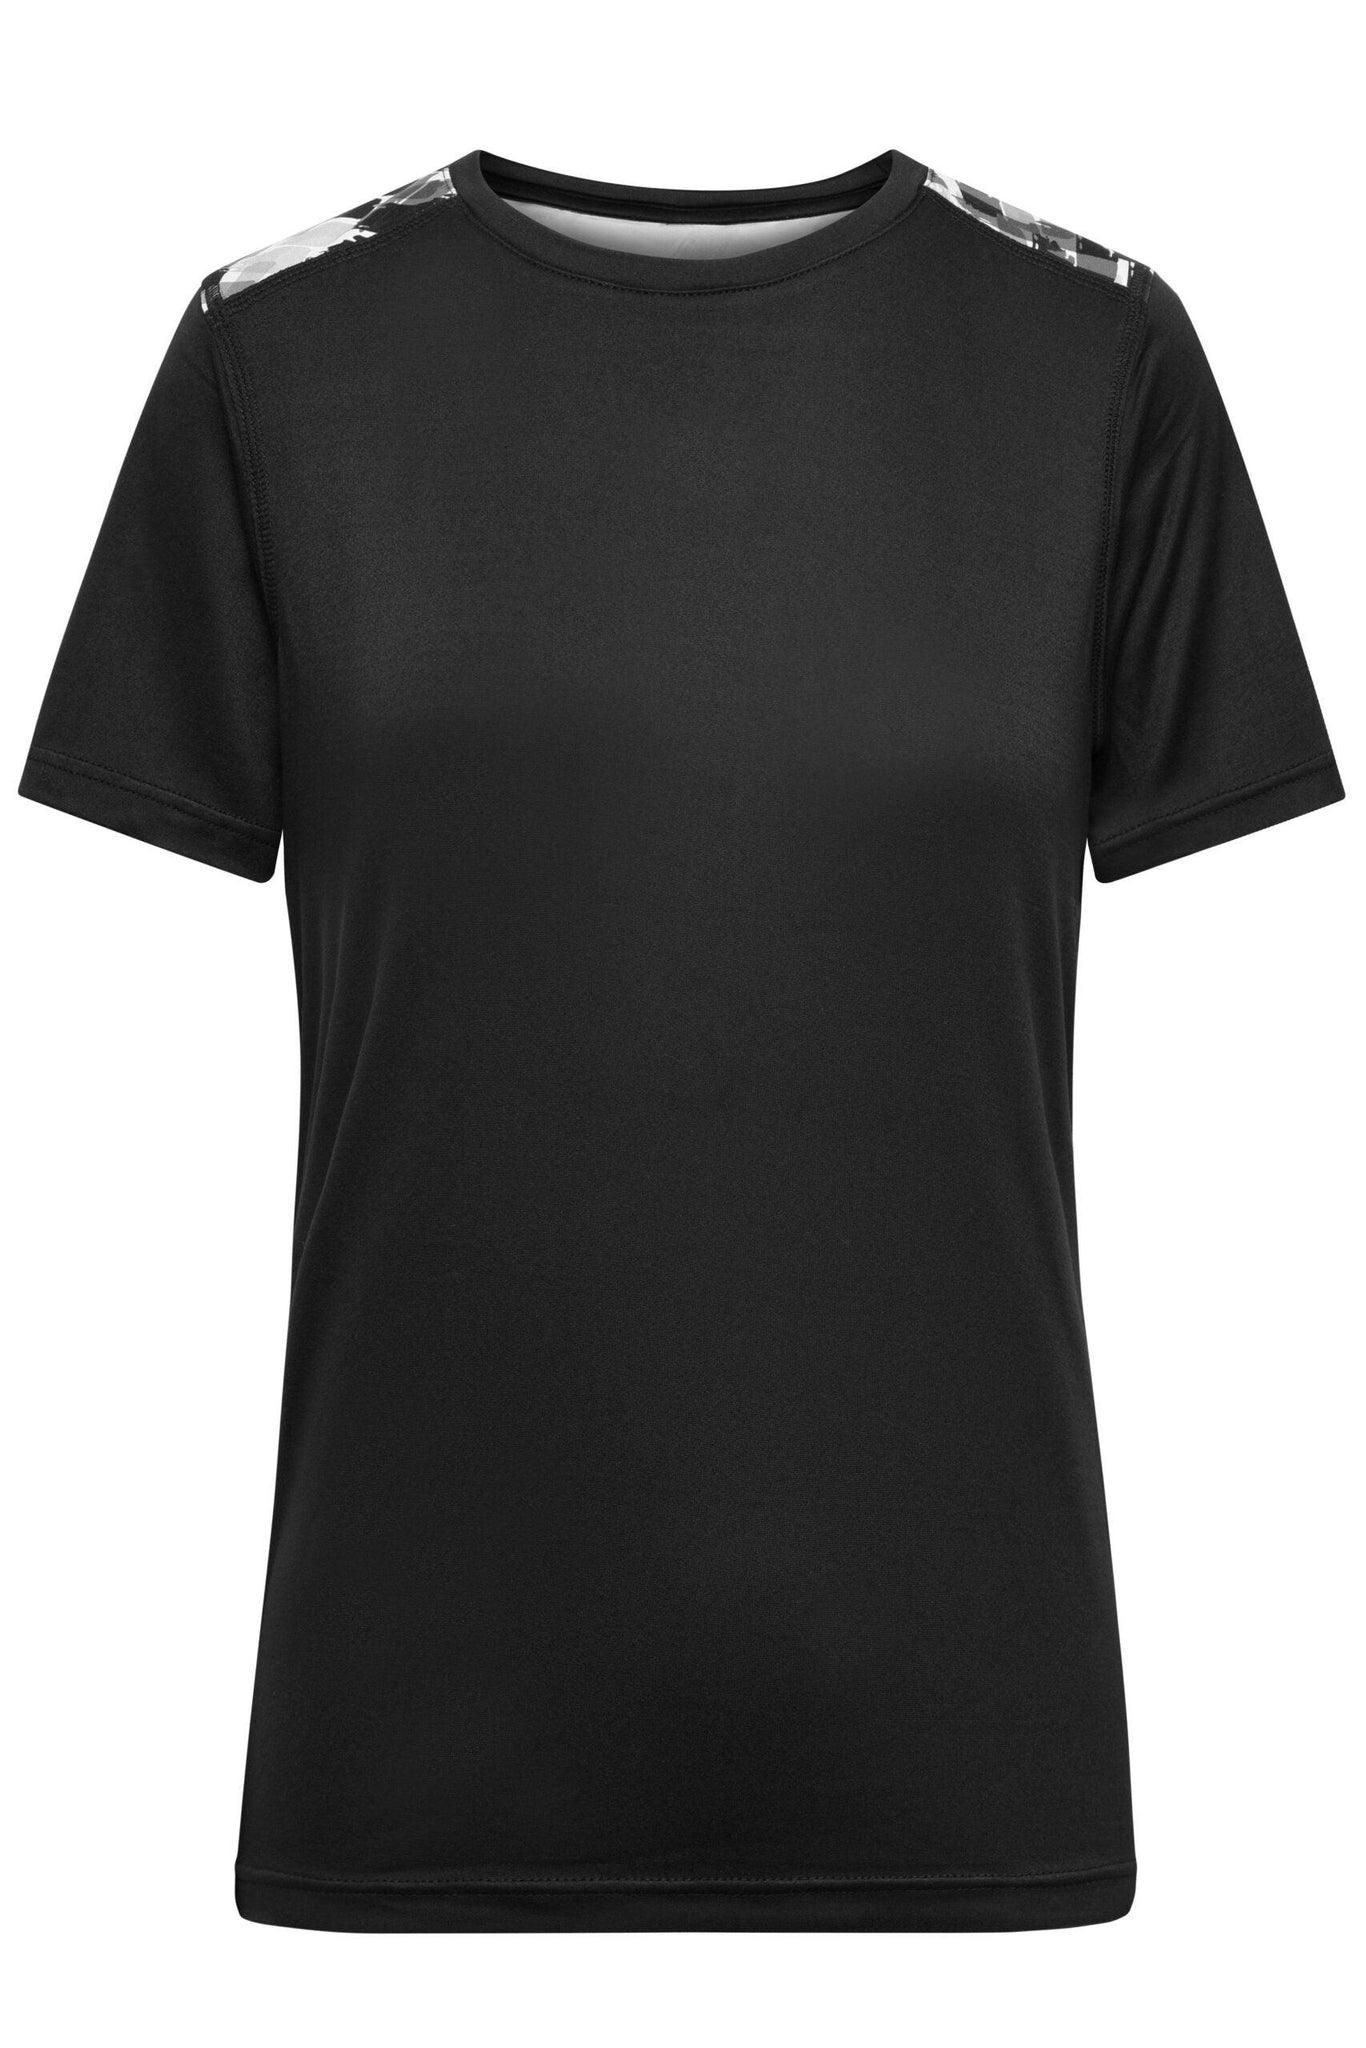 J&N DAME SPORTS T-SHIRT - Fitness T-Shirt - JA Profil 